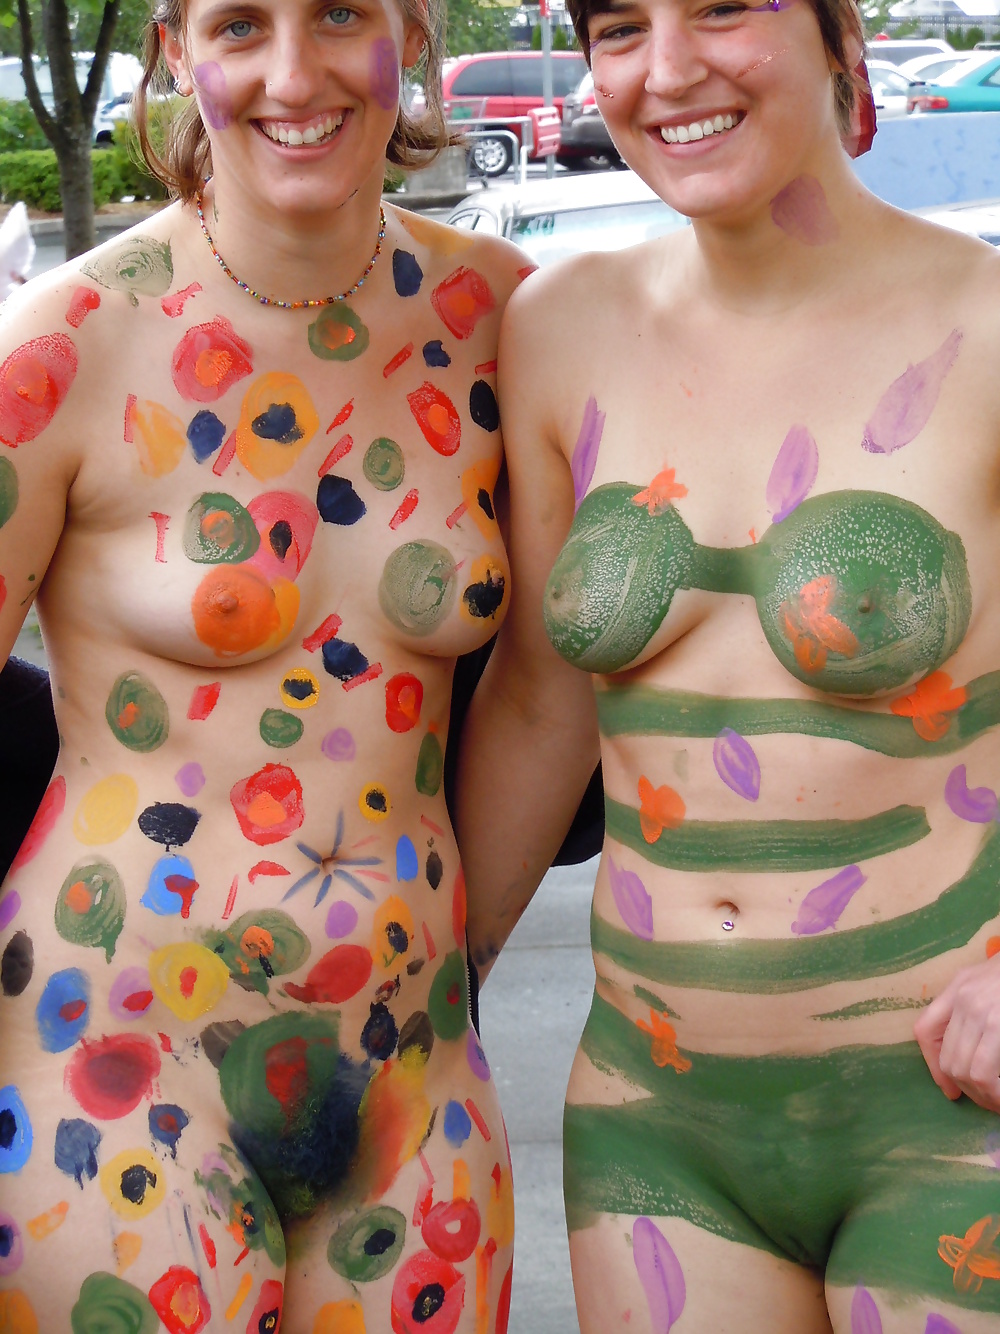 Free Nude public fun 2011-2014 photos